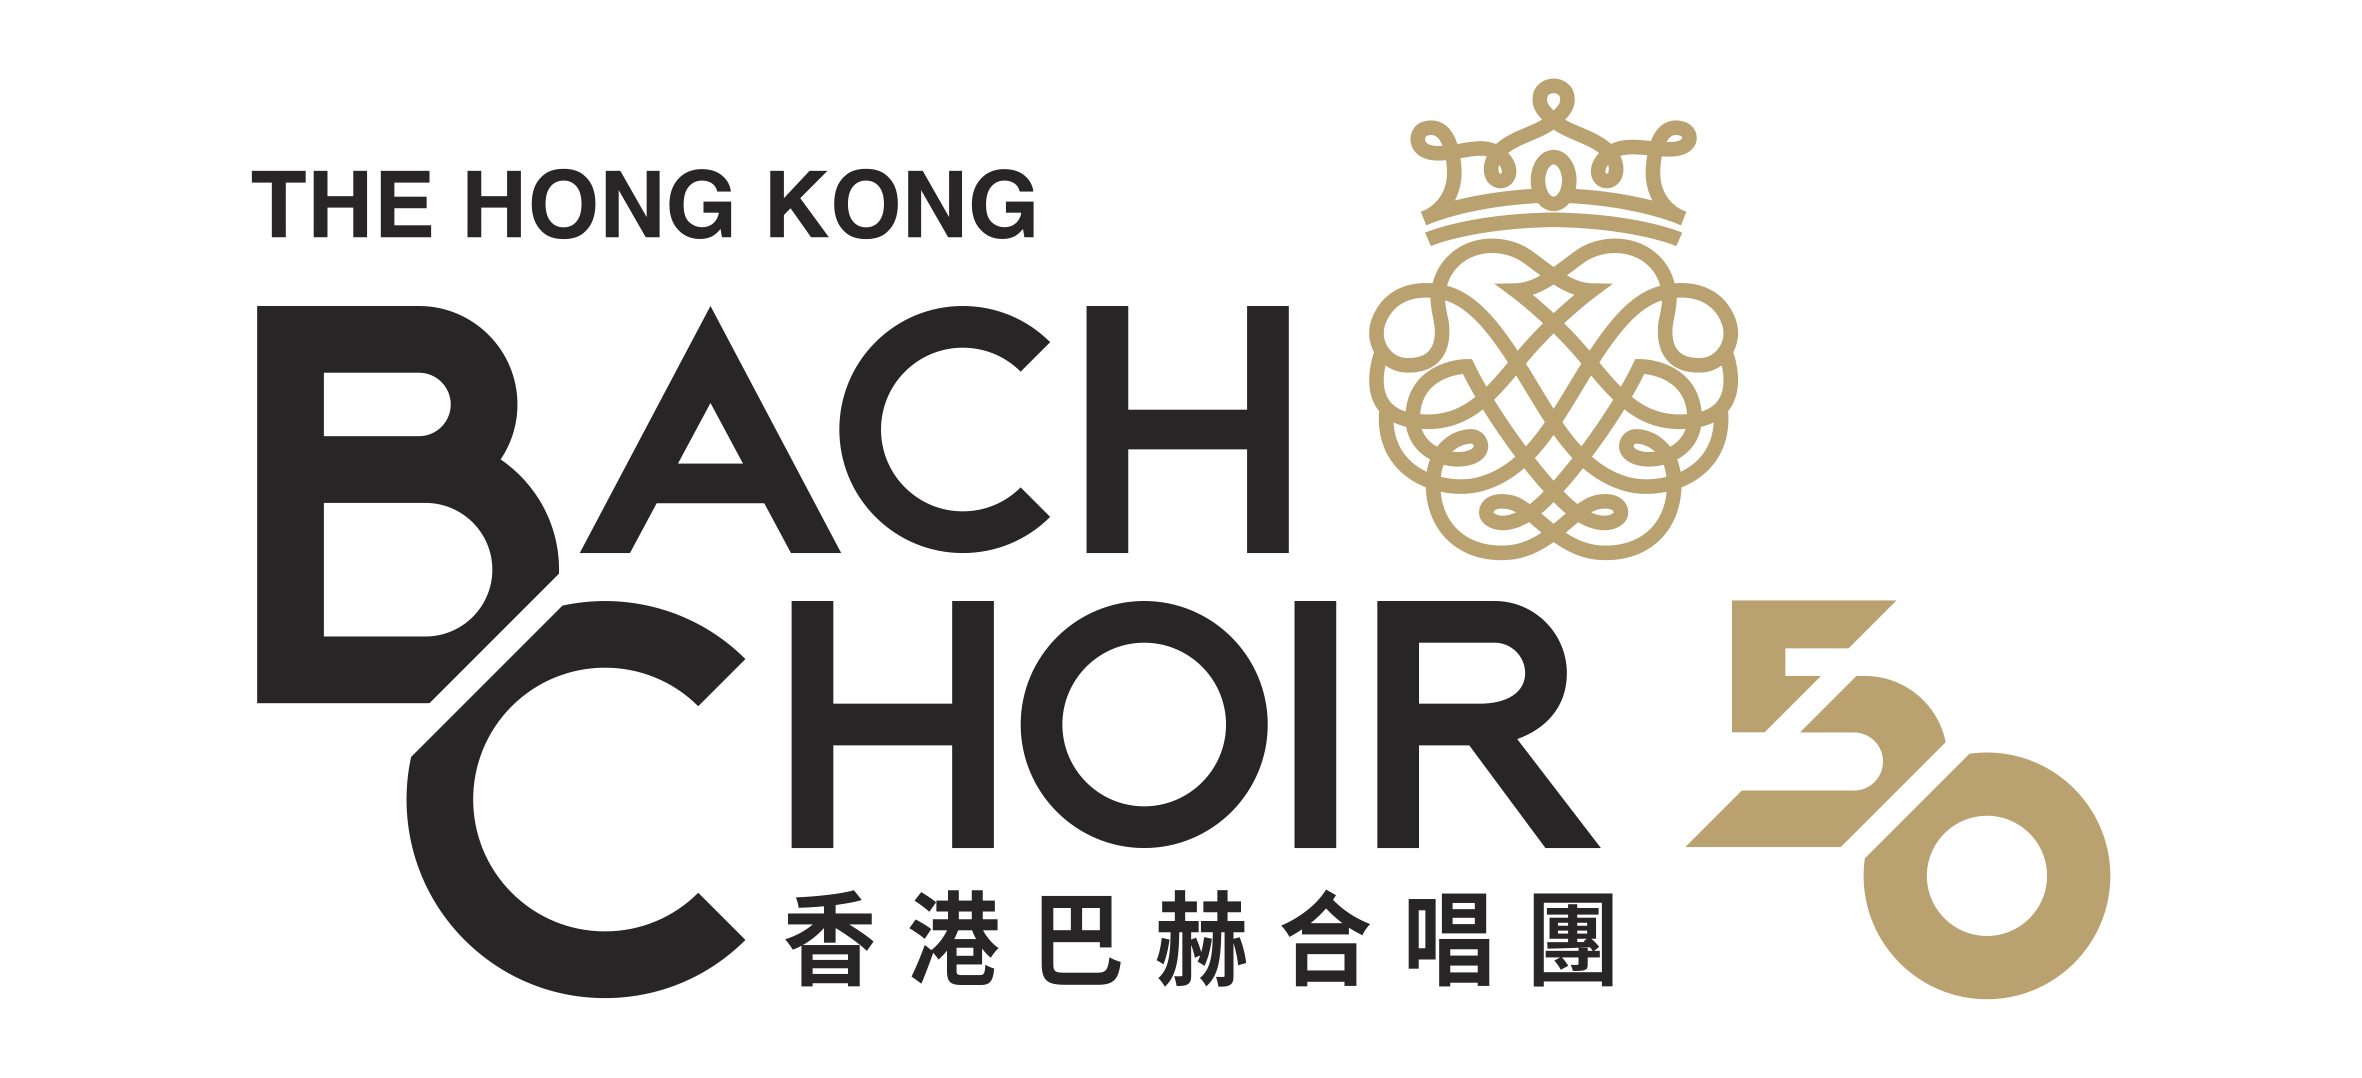 The Hong Kong Bach Choir 